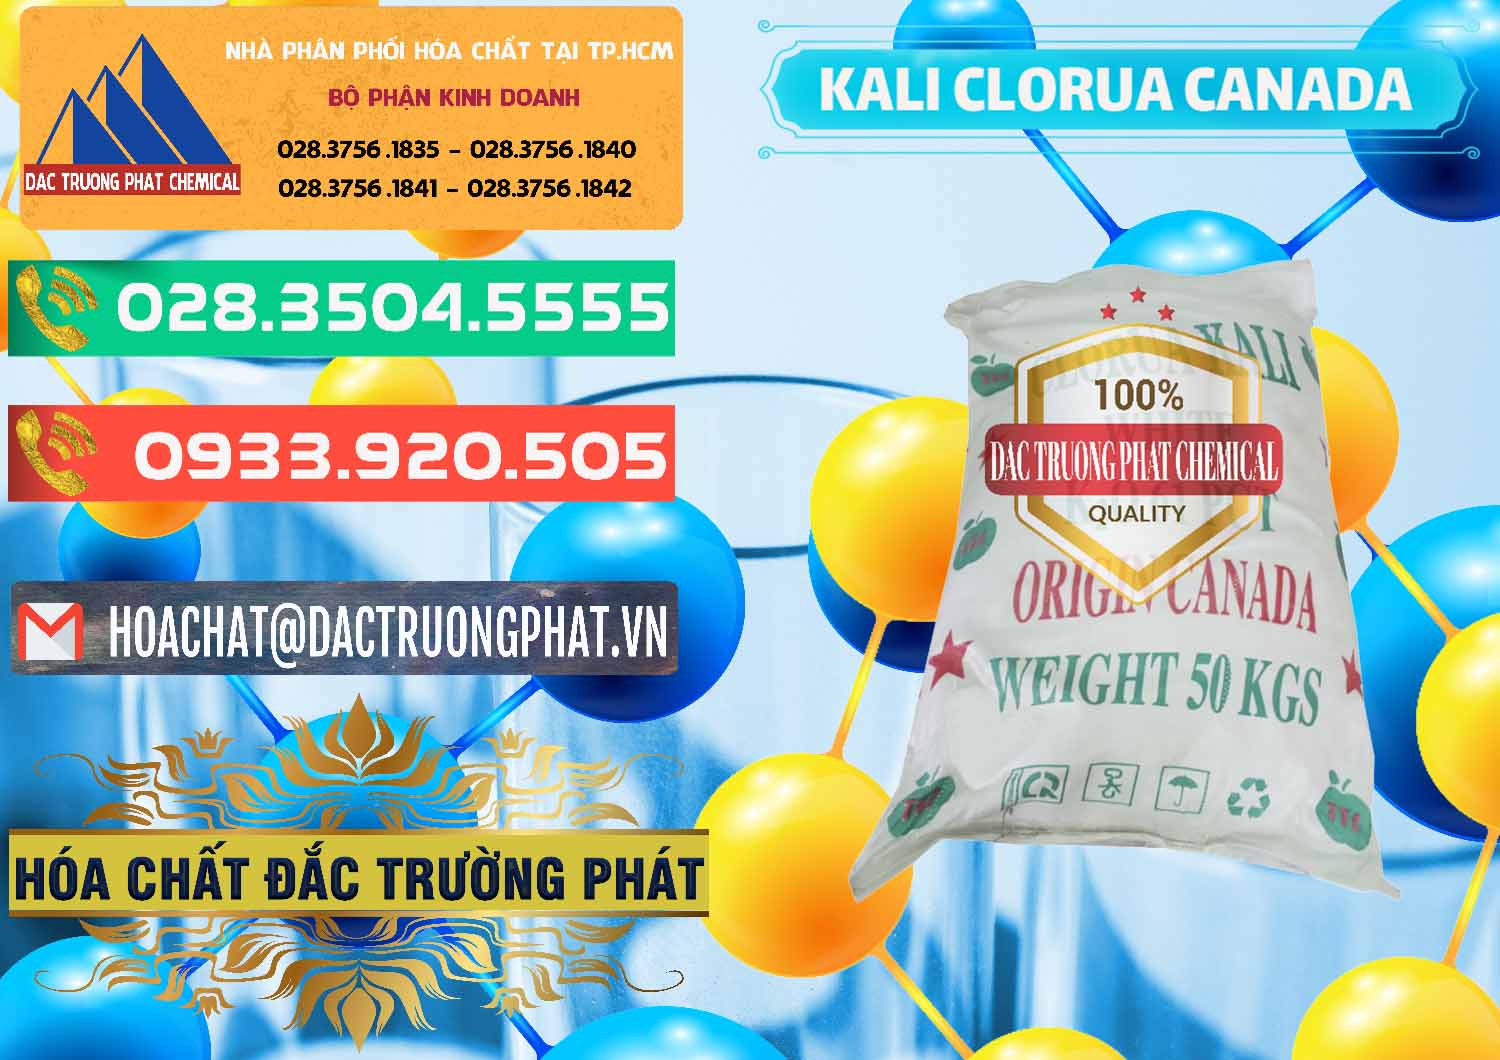 Nơi phân phối - bán KCL – Kali Clorua Trắng Canada - 0437 - Cty cung cấp ( kinh doanh ) hóa chất tại TP.HCM - congtyhoachat.com.vn